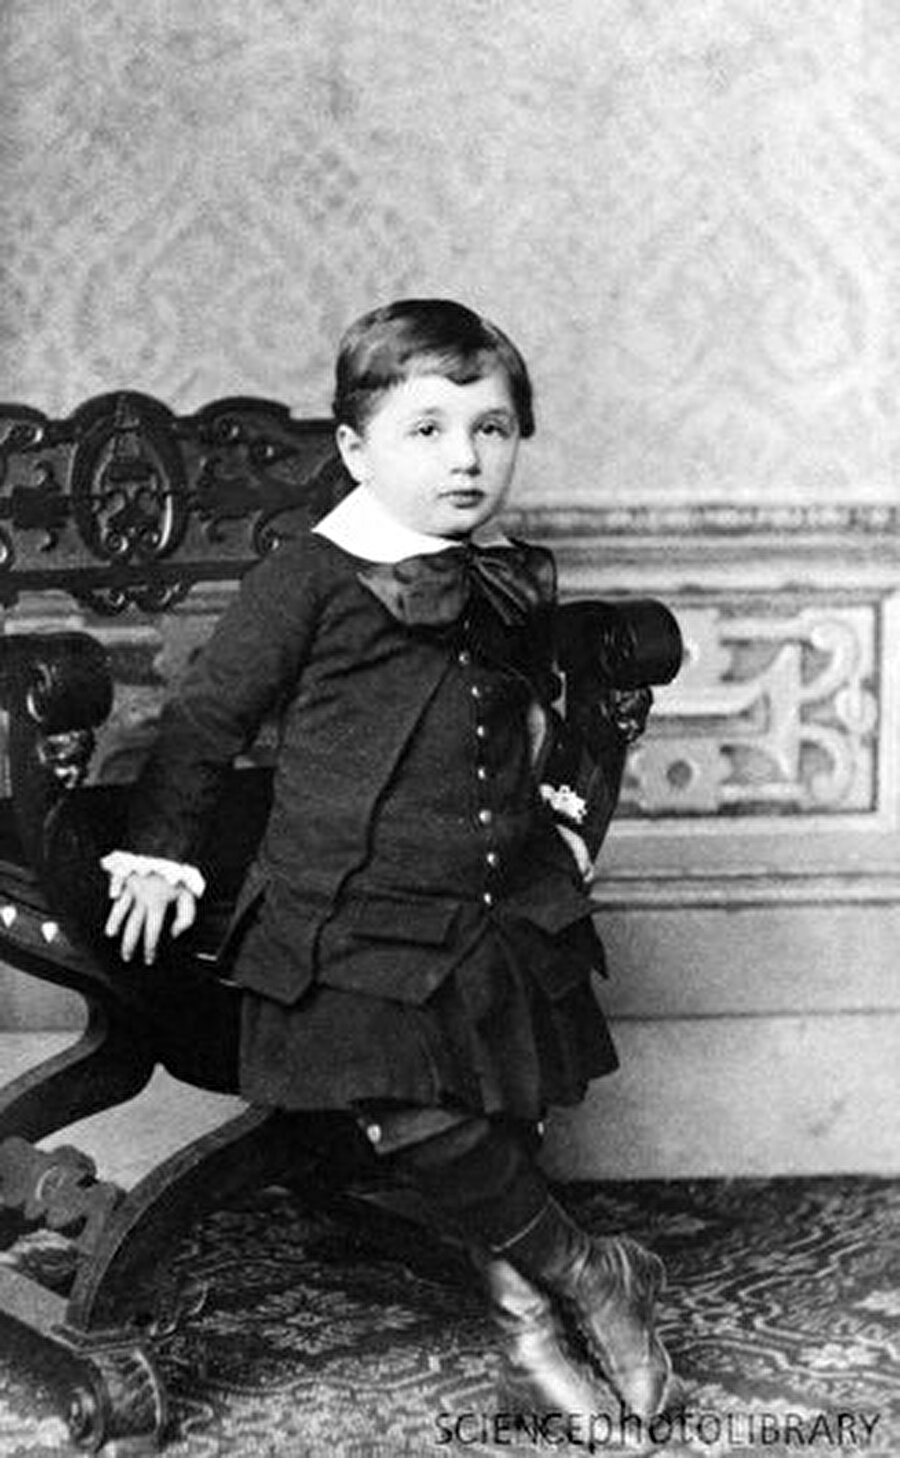 16 yaşında Alman vatandaşlığını bıraktı

                                    Albert Einstein küçük yaşlarından itibaren 'milliyetçilik' fikrinden uzaktı. Ona göre herkes 'dünya' vatandaşıydı. 16 yaşında Alman vatandaşlığından ayrılan Einstein 1901'de İsveç vatandaşlığına geçti. 
                                